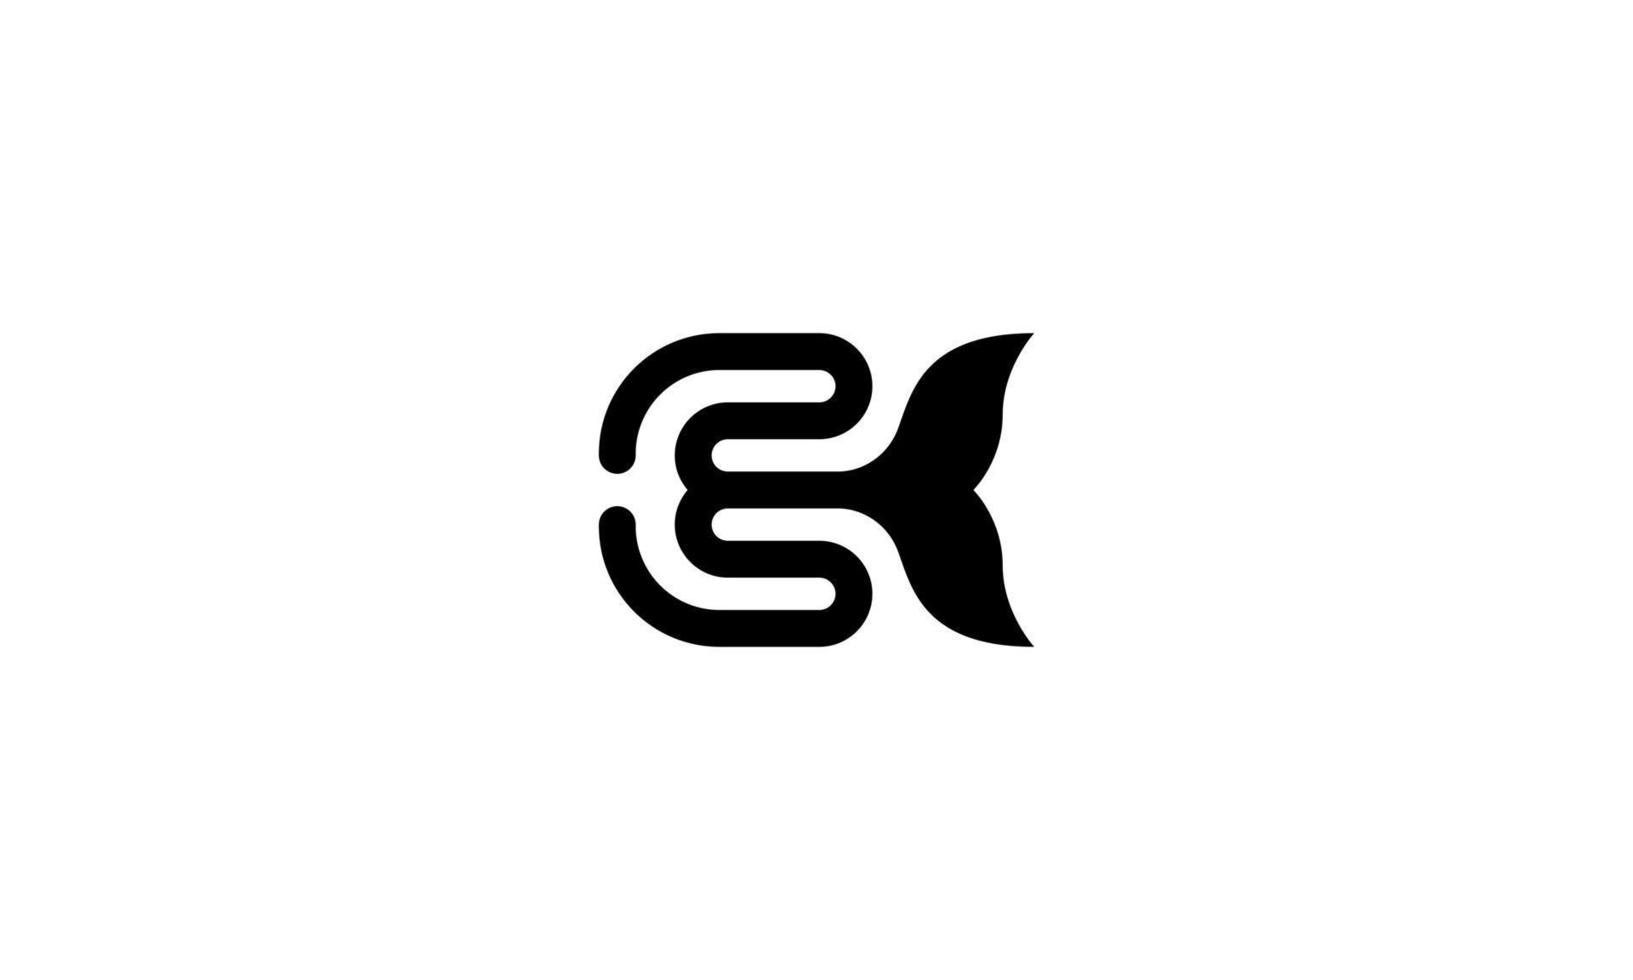 lettera e con pinna di balena. logo creativo e unico. illustrazione vettoriale